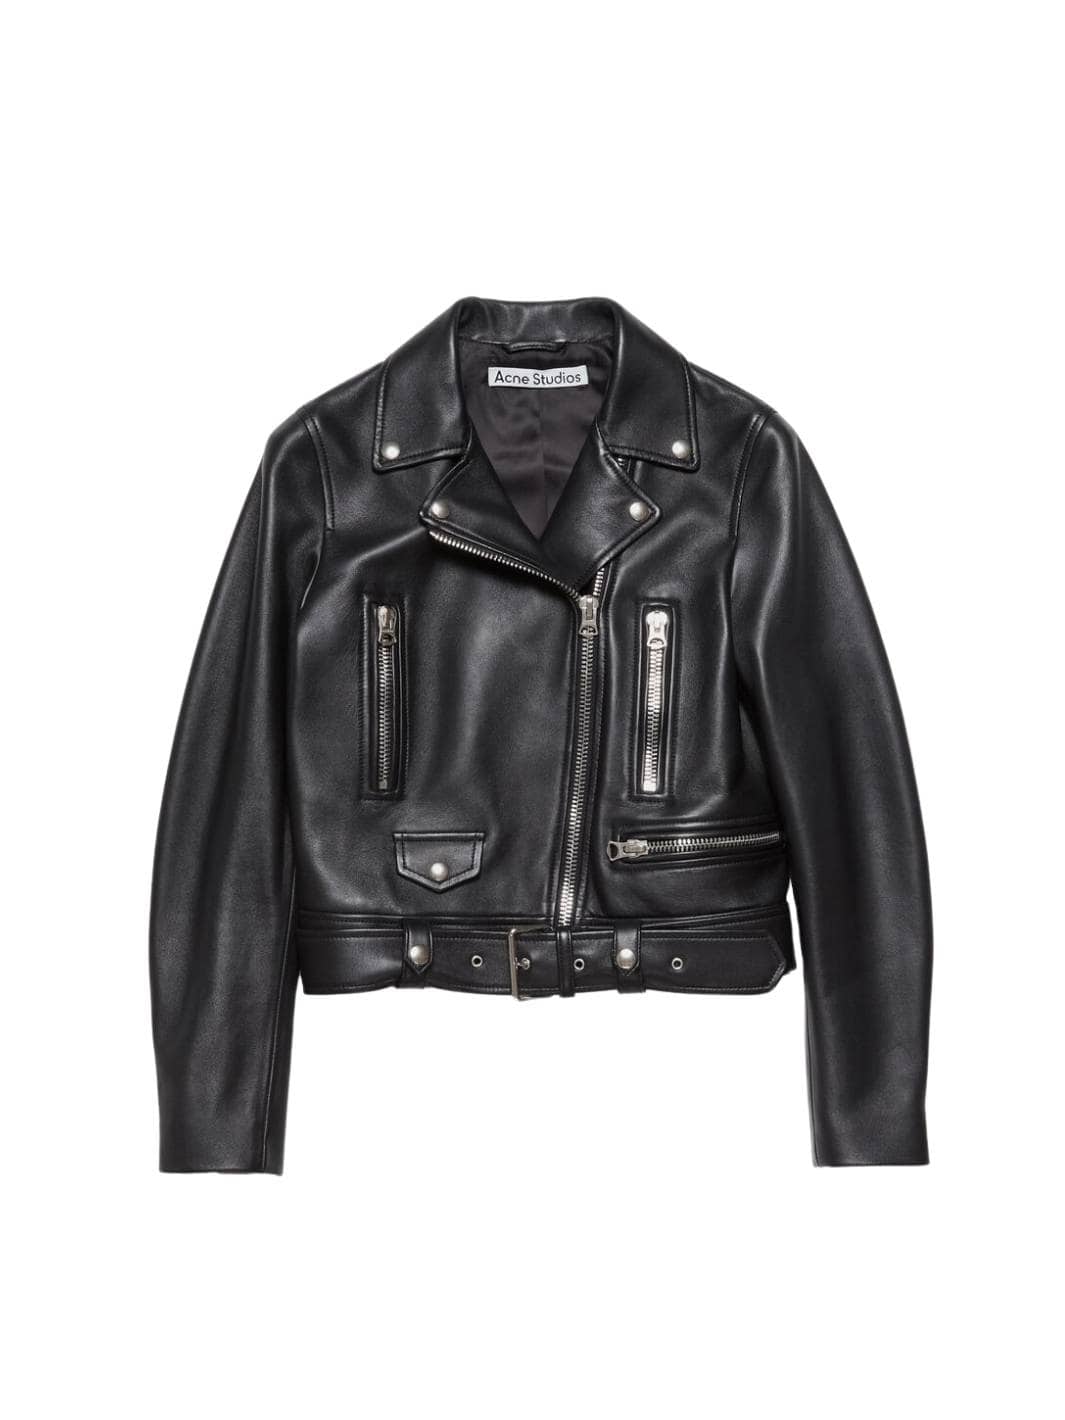 Acne Studios Jackets Jakke | Leather Biker Jacket Black